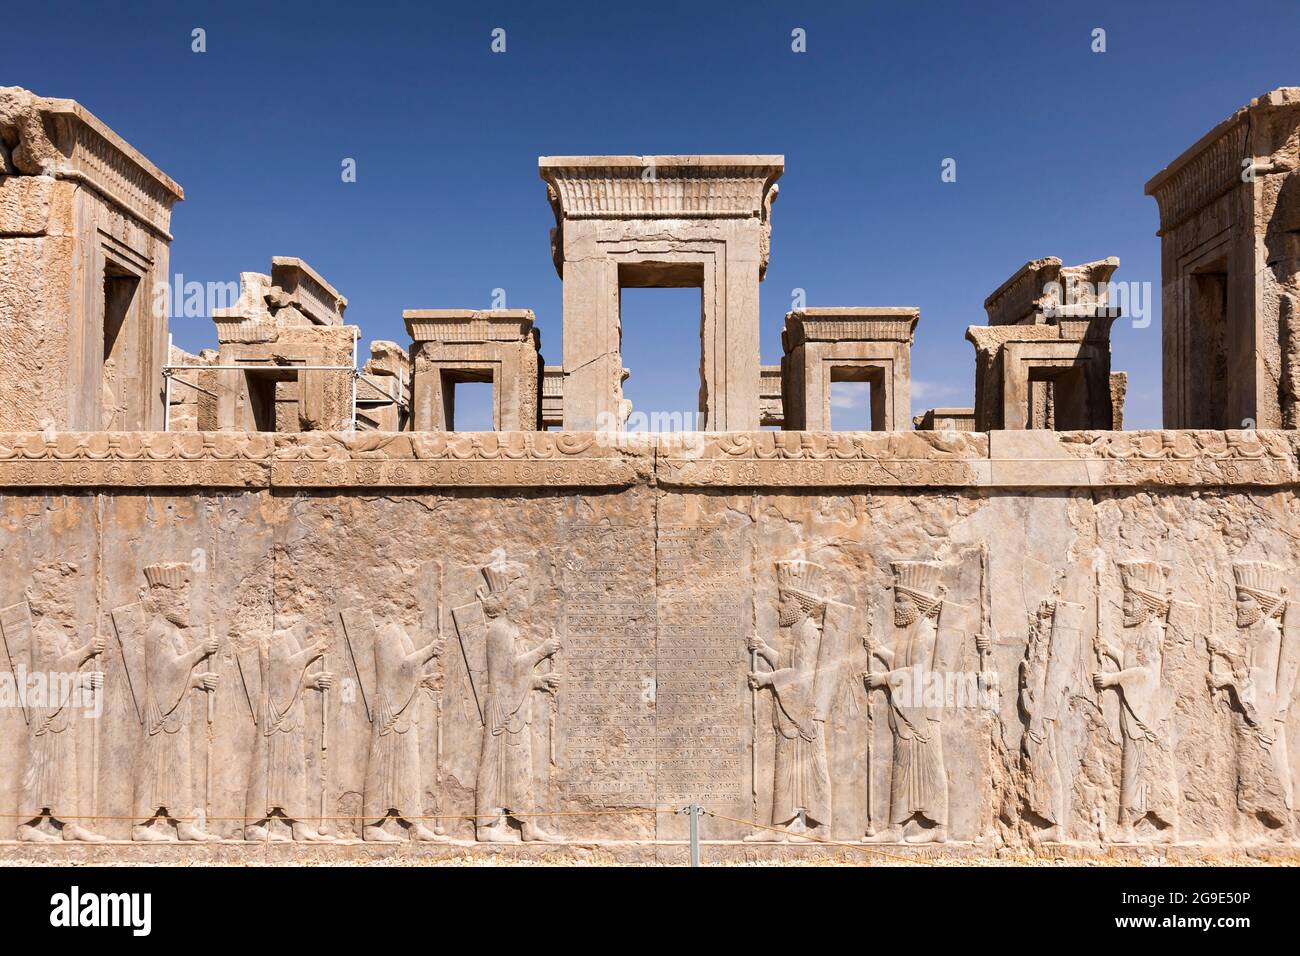 Persepolis, sollievo dei soldati, palazzo di Dario il grande (Tachara), capitale dell'impero Achemenide, provincia di Fars, Iran, Persia, Asia occidentale, Asia Foto Stock